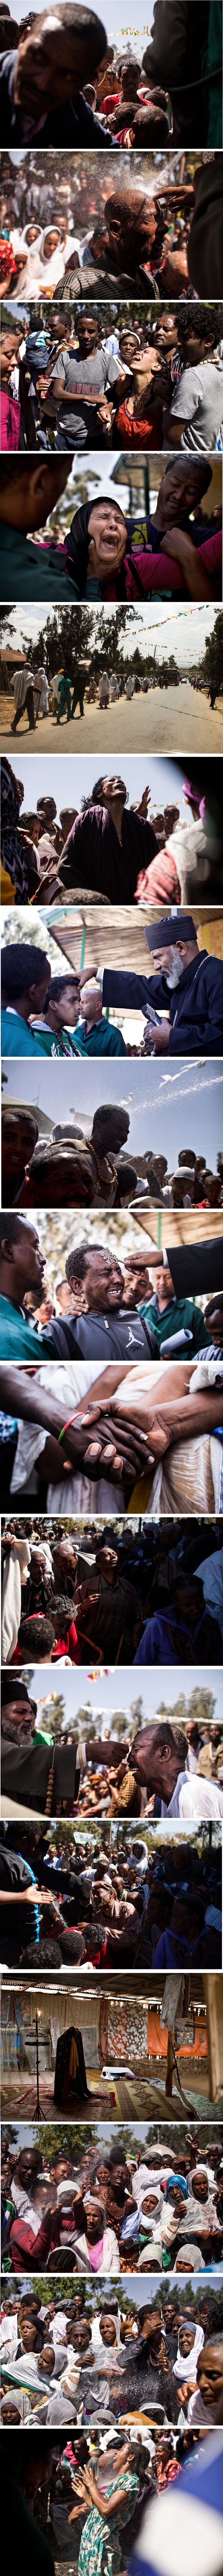 Fotoaparatom je zabilježio jezive trenutke egzorcizma u Etiopiji 